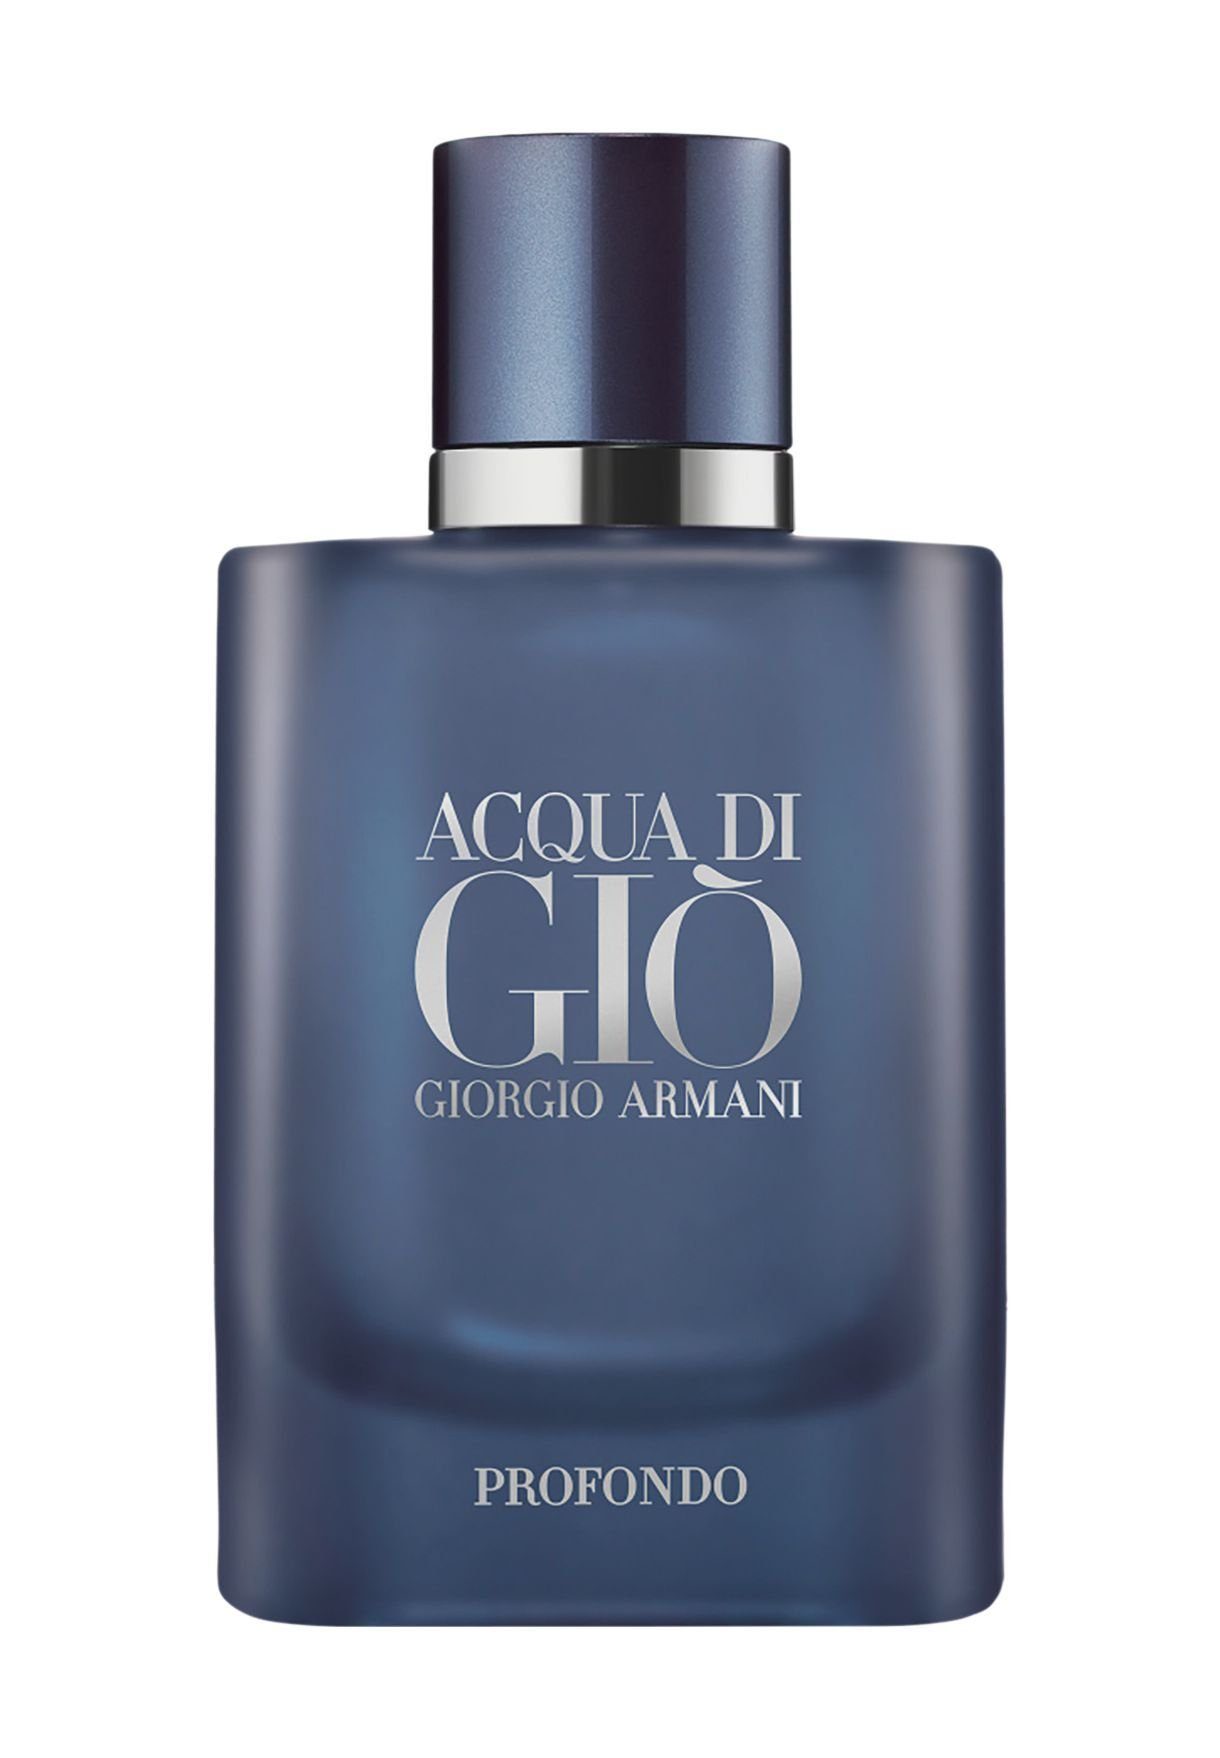 Giorgio Armani Eau Gio de Profondo di de Eau ml Armani 200 Parfum Parfum Acqua